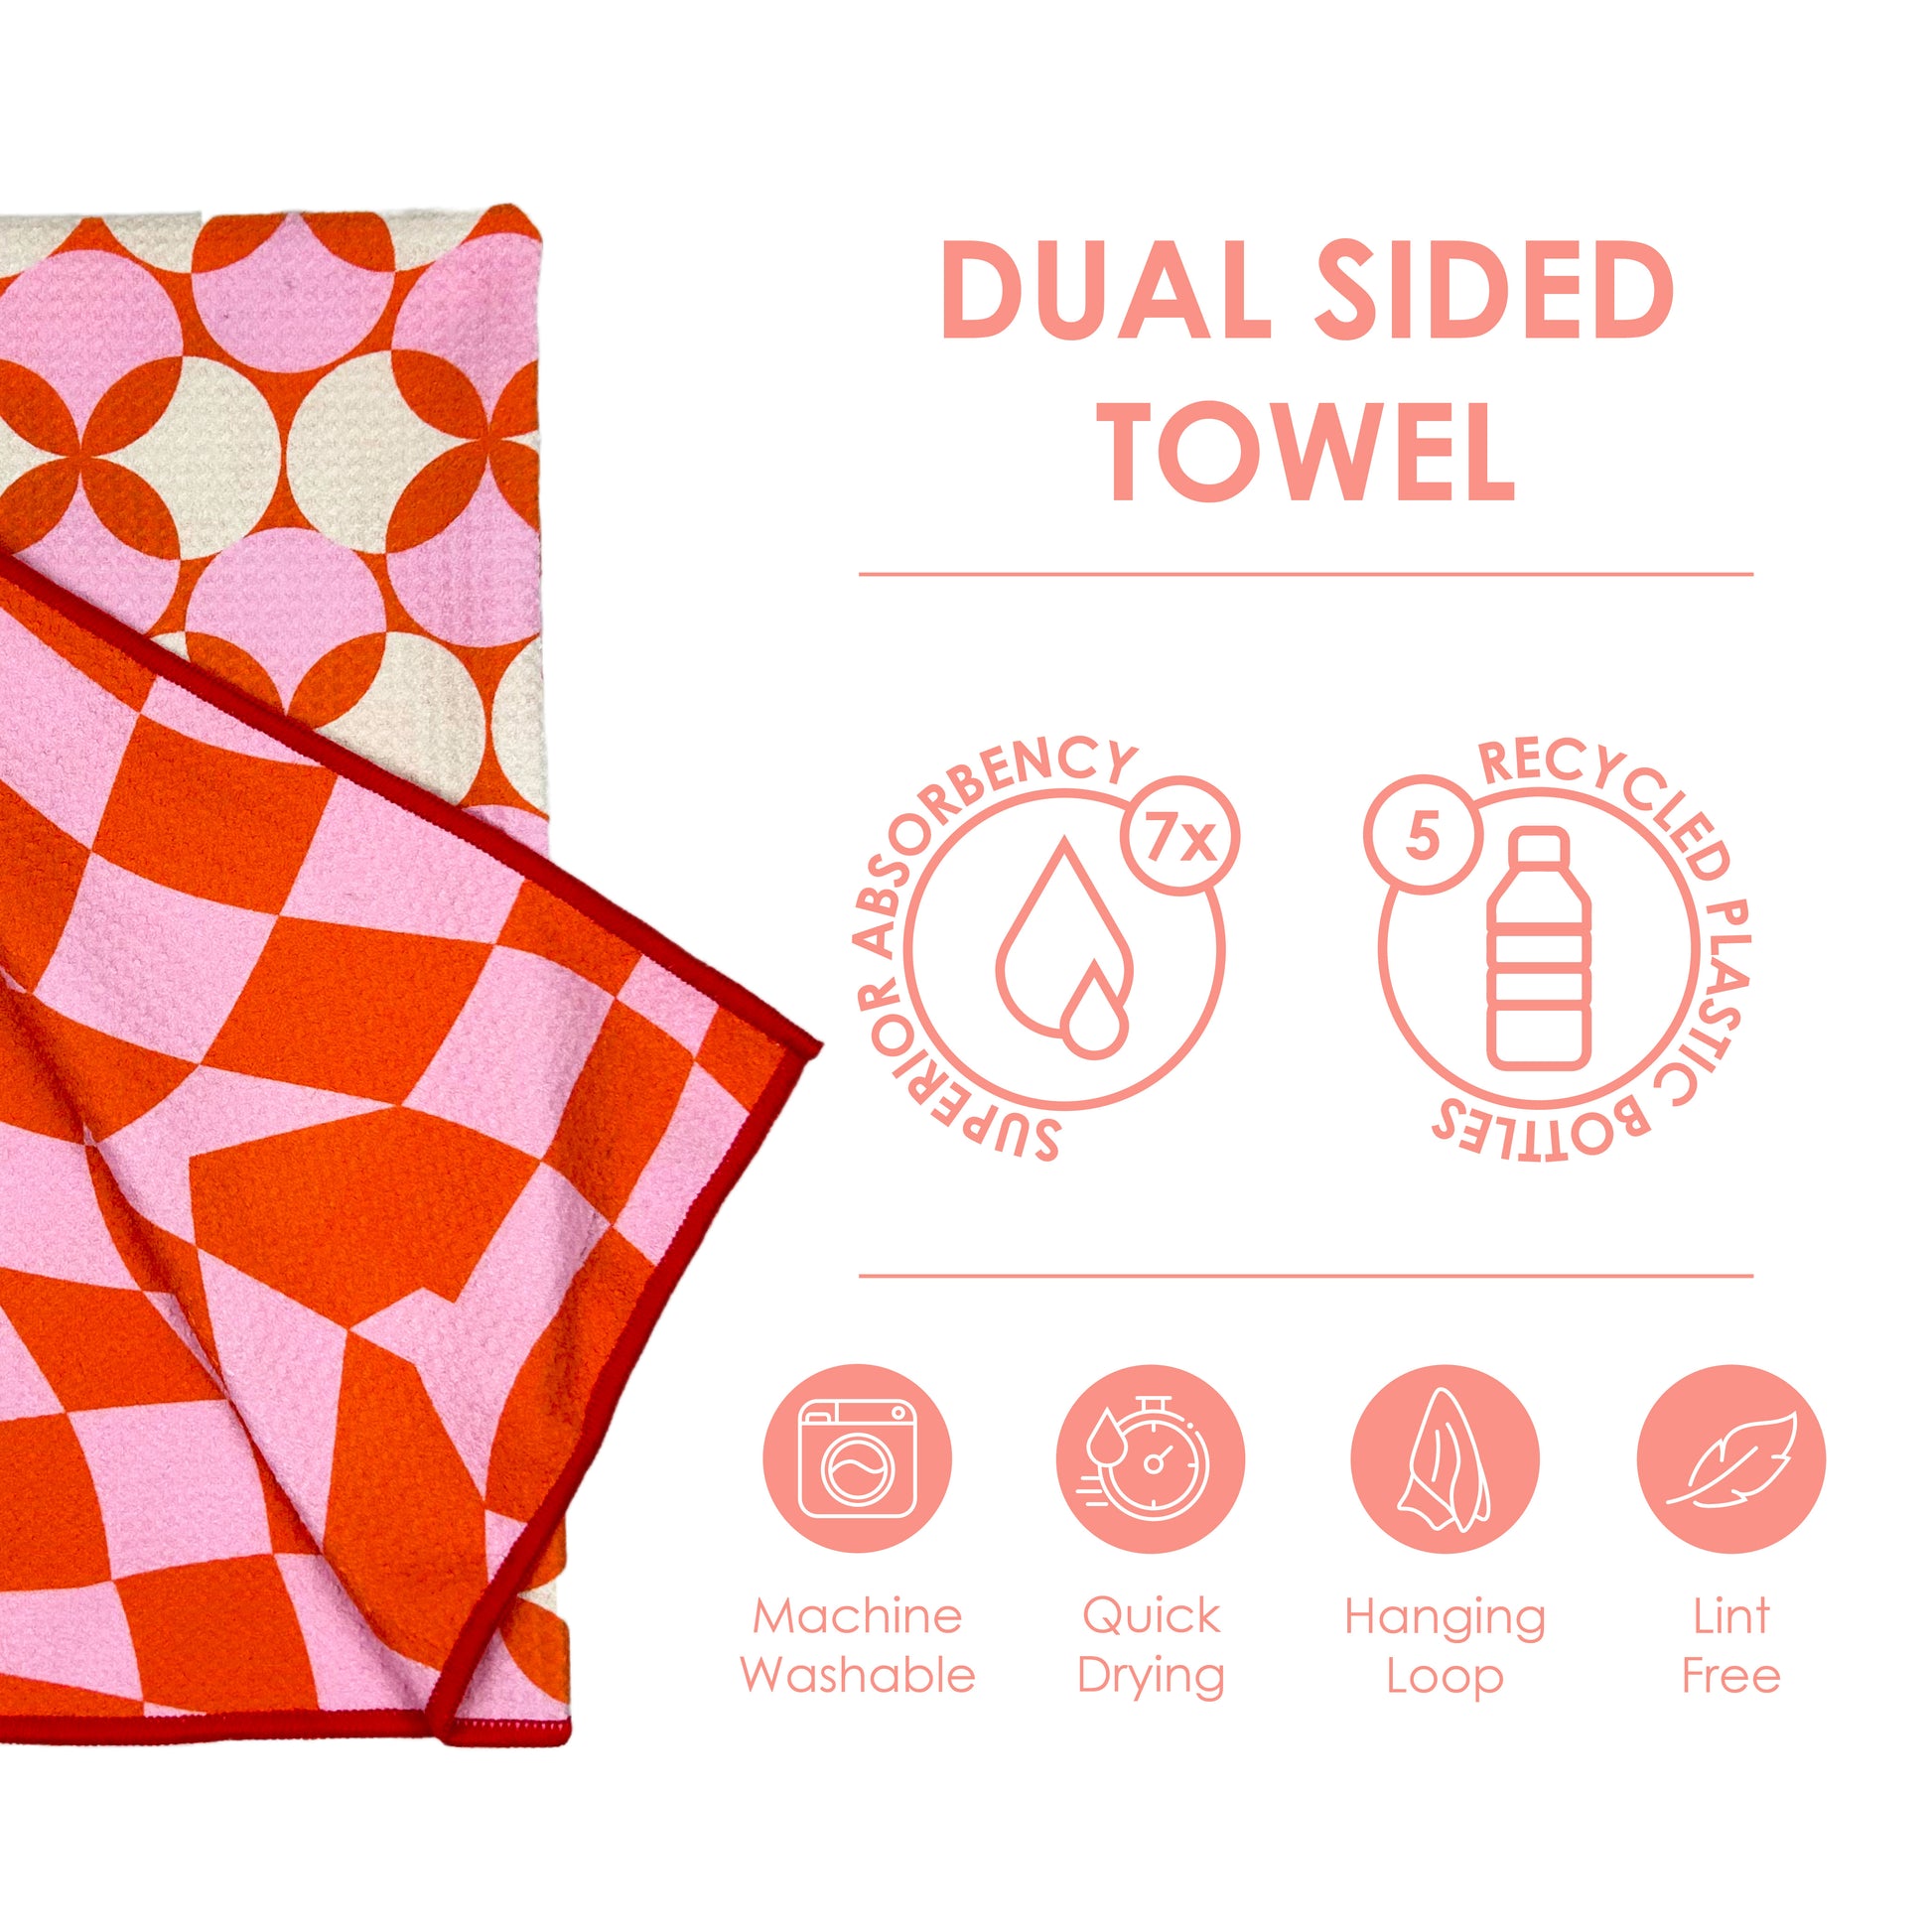 Pumpkins - Kitchen Dish Towel & Hand towel – Buzzee